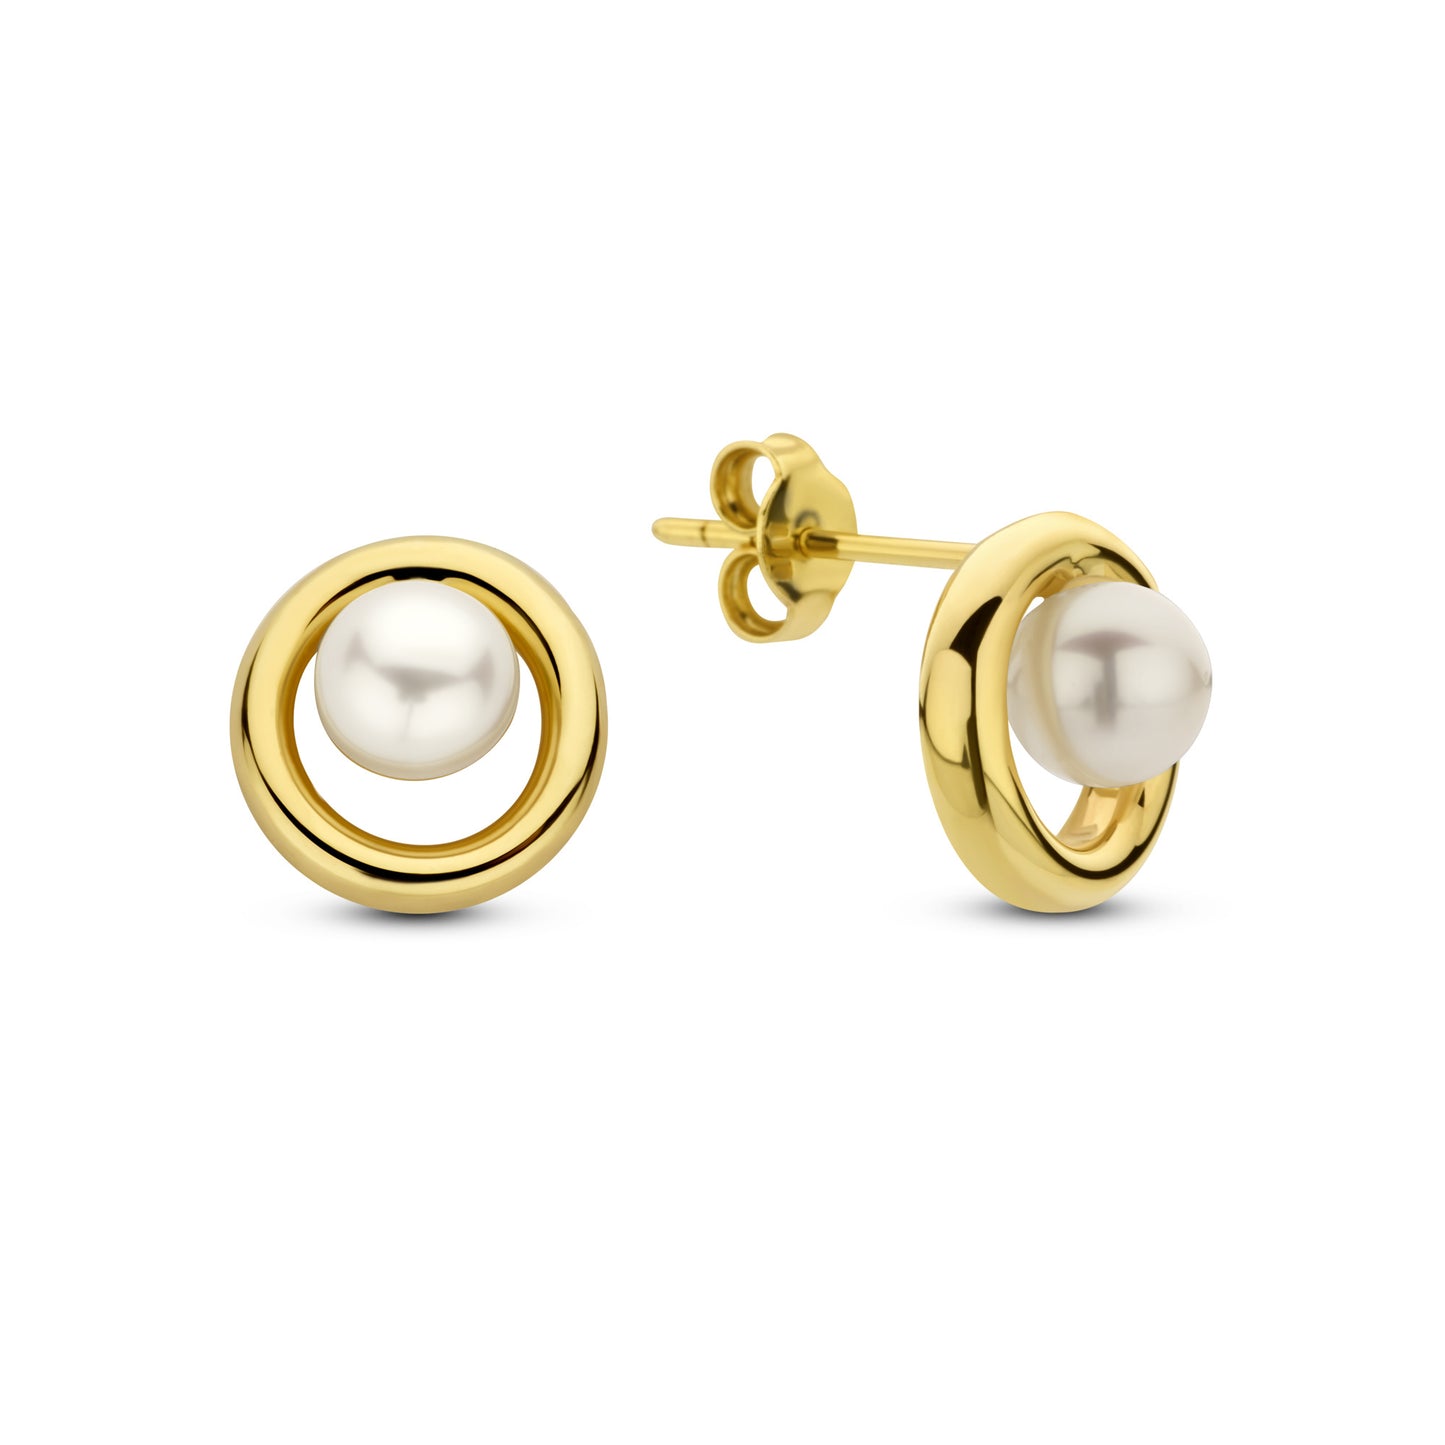 Monte Napoleone Perla orecchini a bottone in oro 9 carati con perla